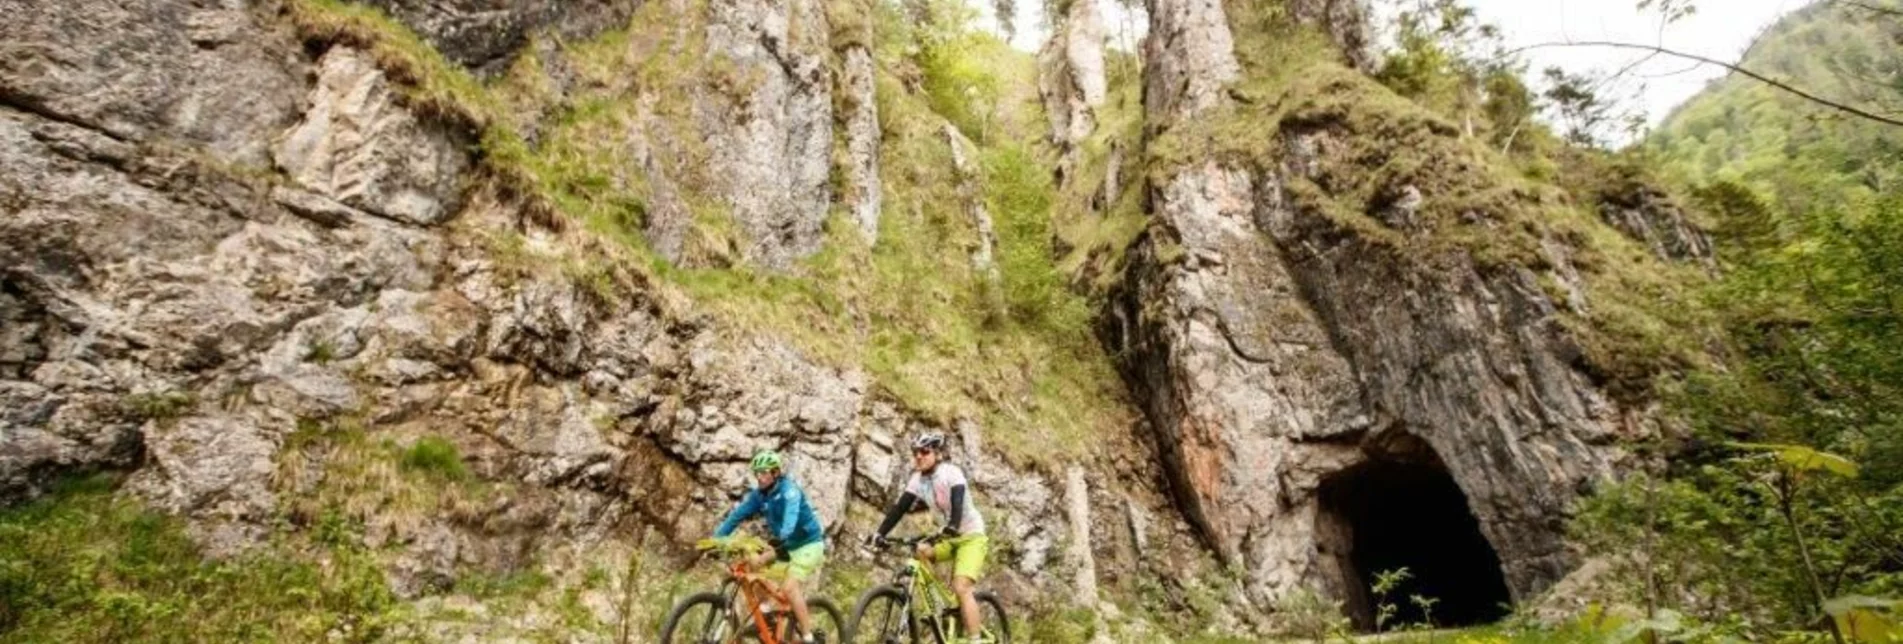 Mountainbike Auf den Spuren der Waldbahn - Touren-Impression #1 | © TV Gesäuse